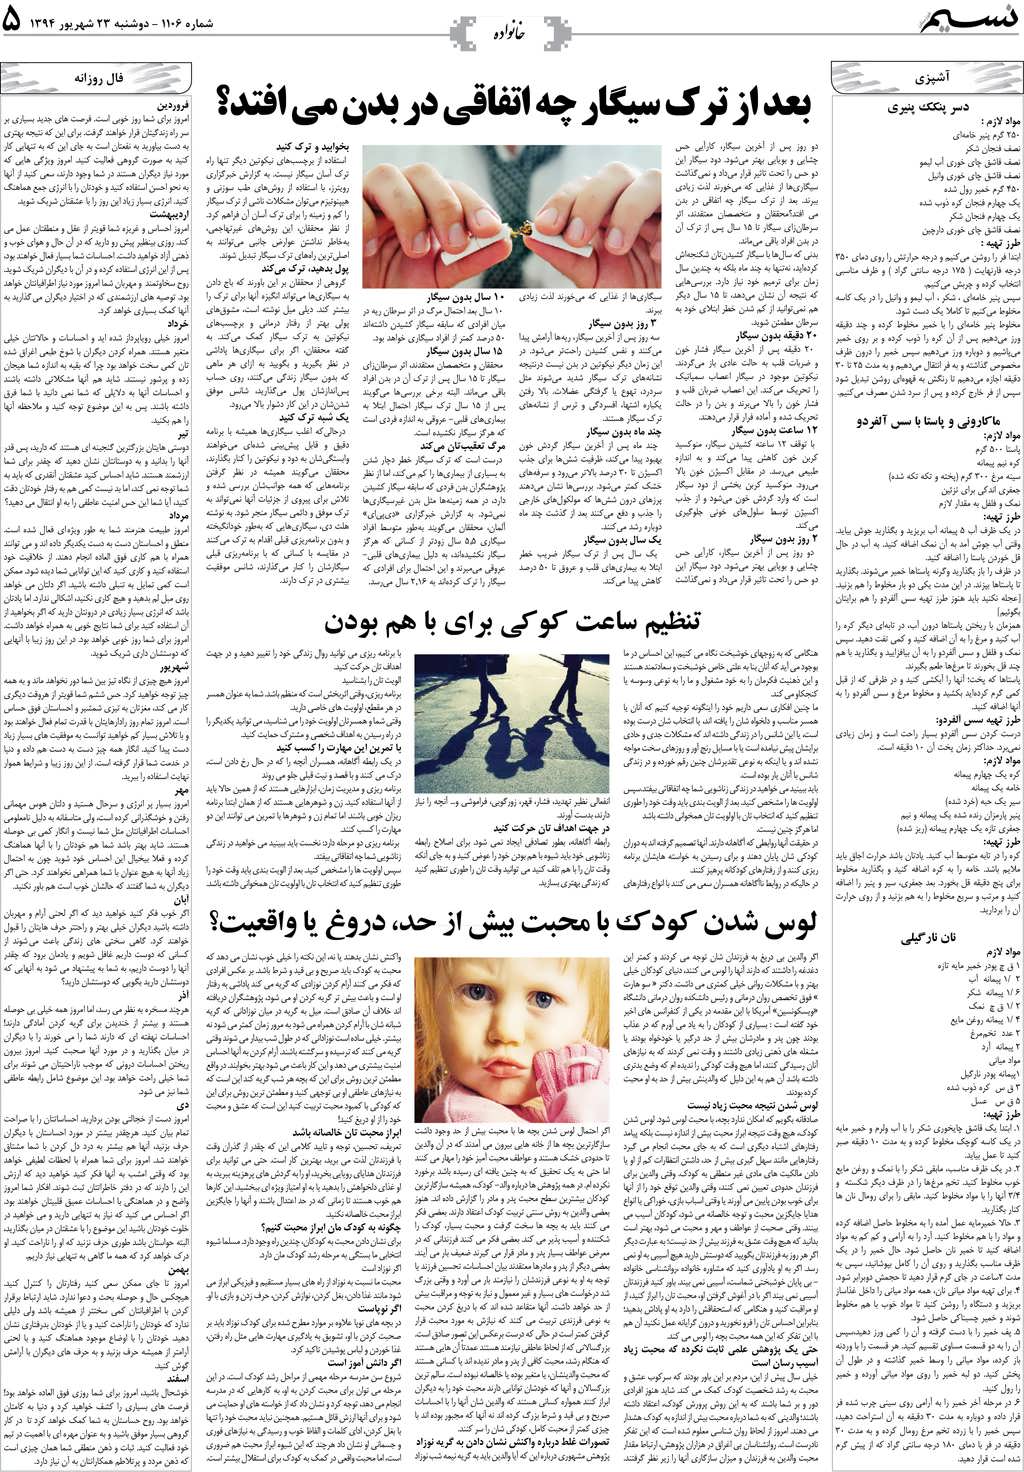 صفحه خانواده روزنامه نسیم شماره 1106